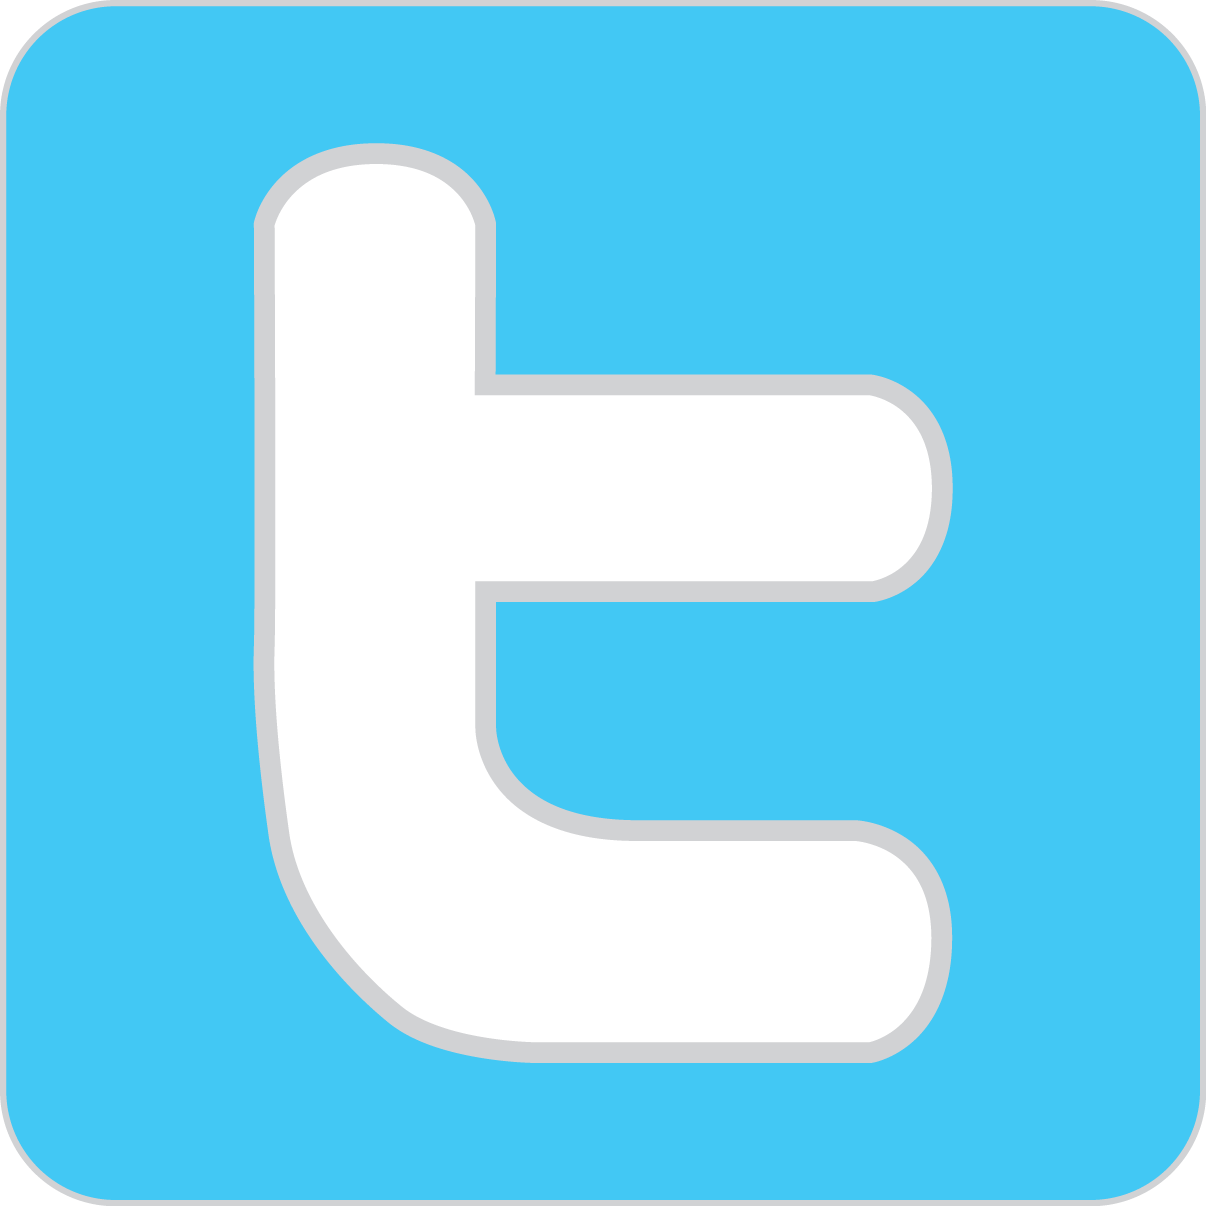 Modern Twitter Logo - Social Media: Twitter, Pinterest, and Instagram. Amy's Healthy Baking